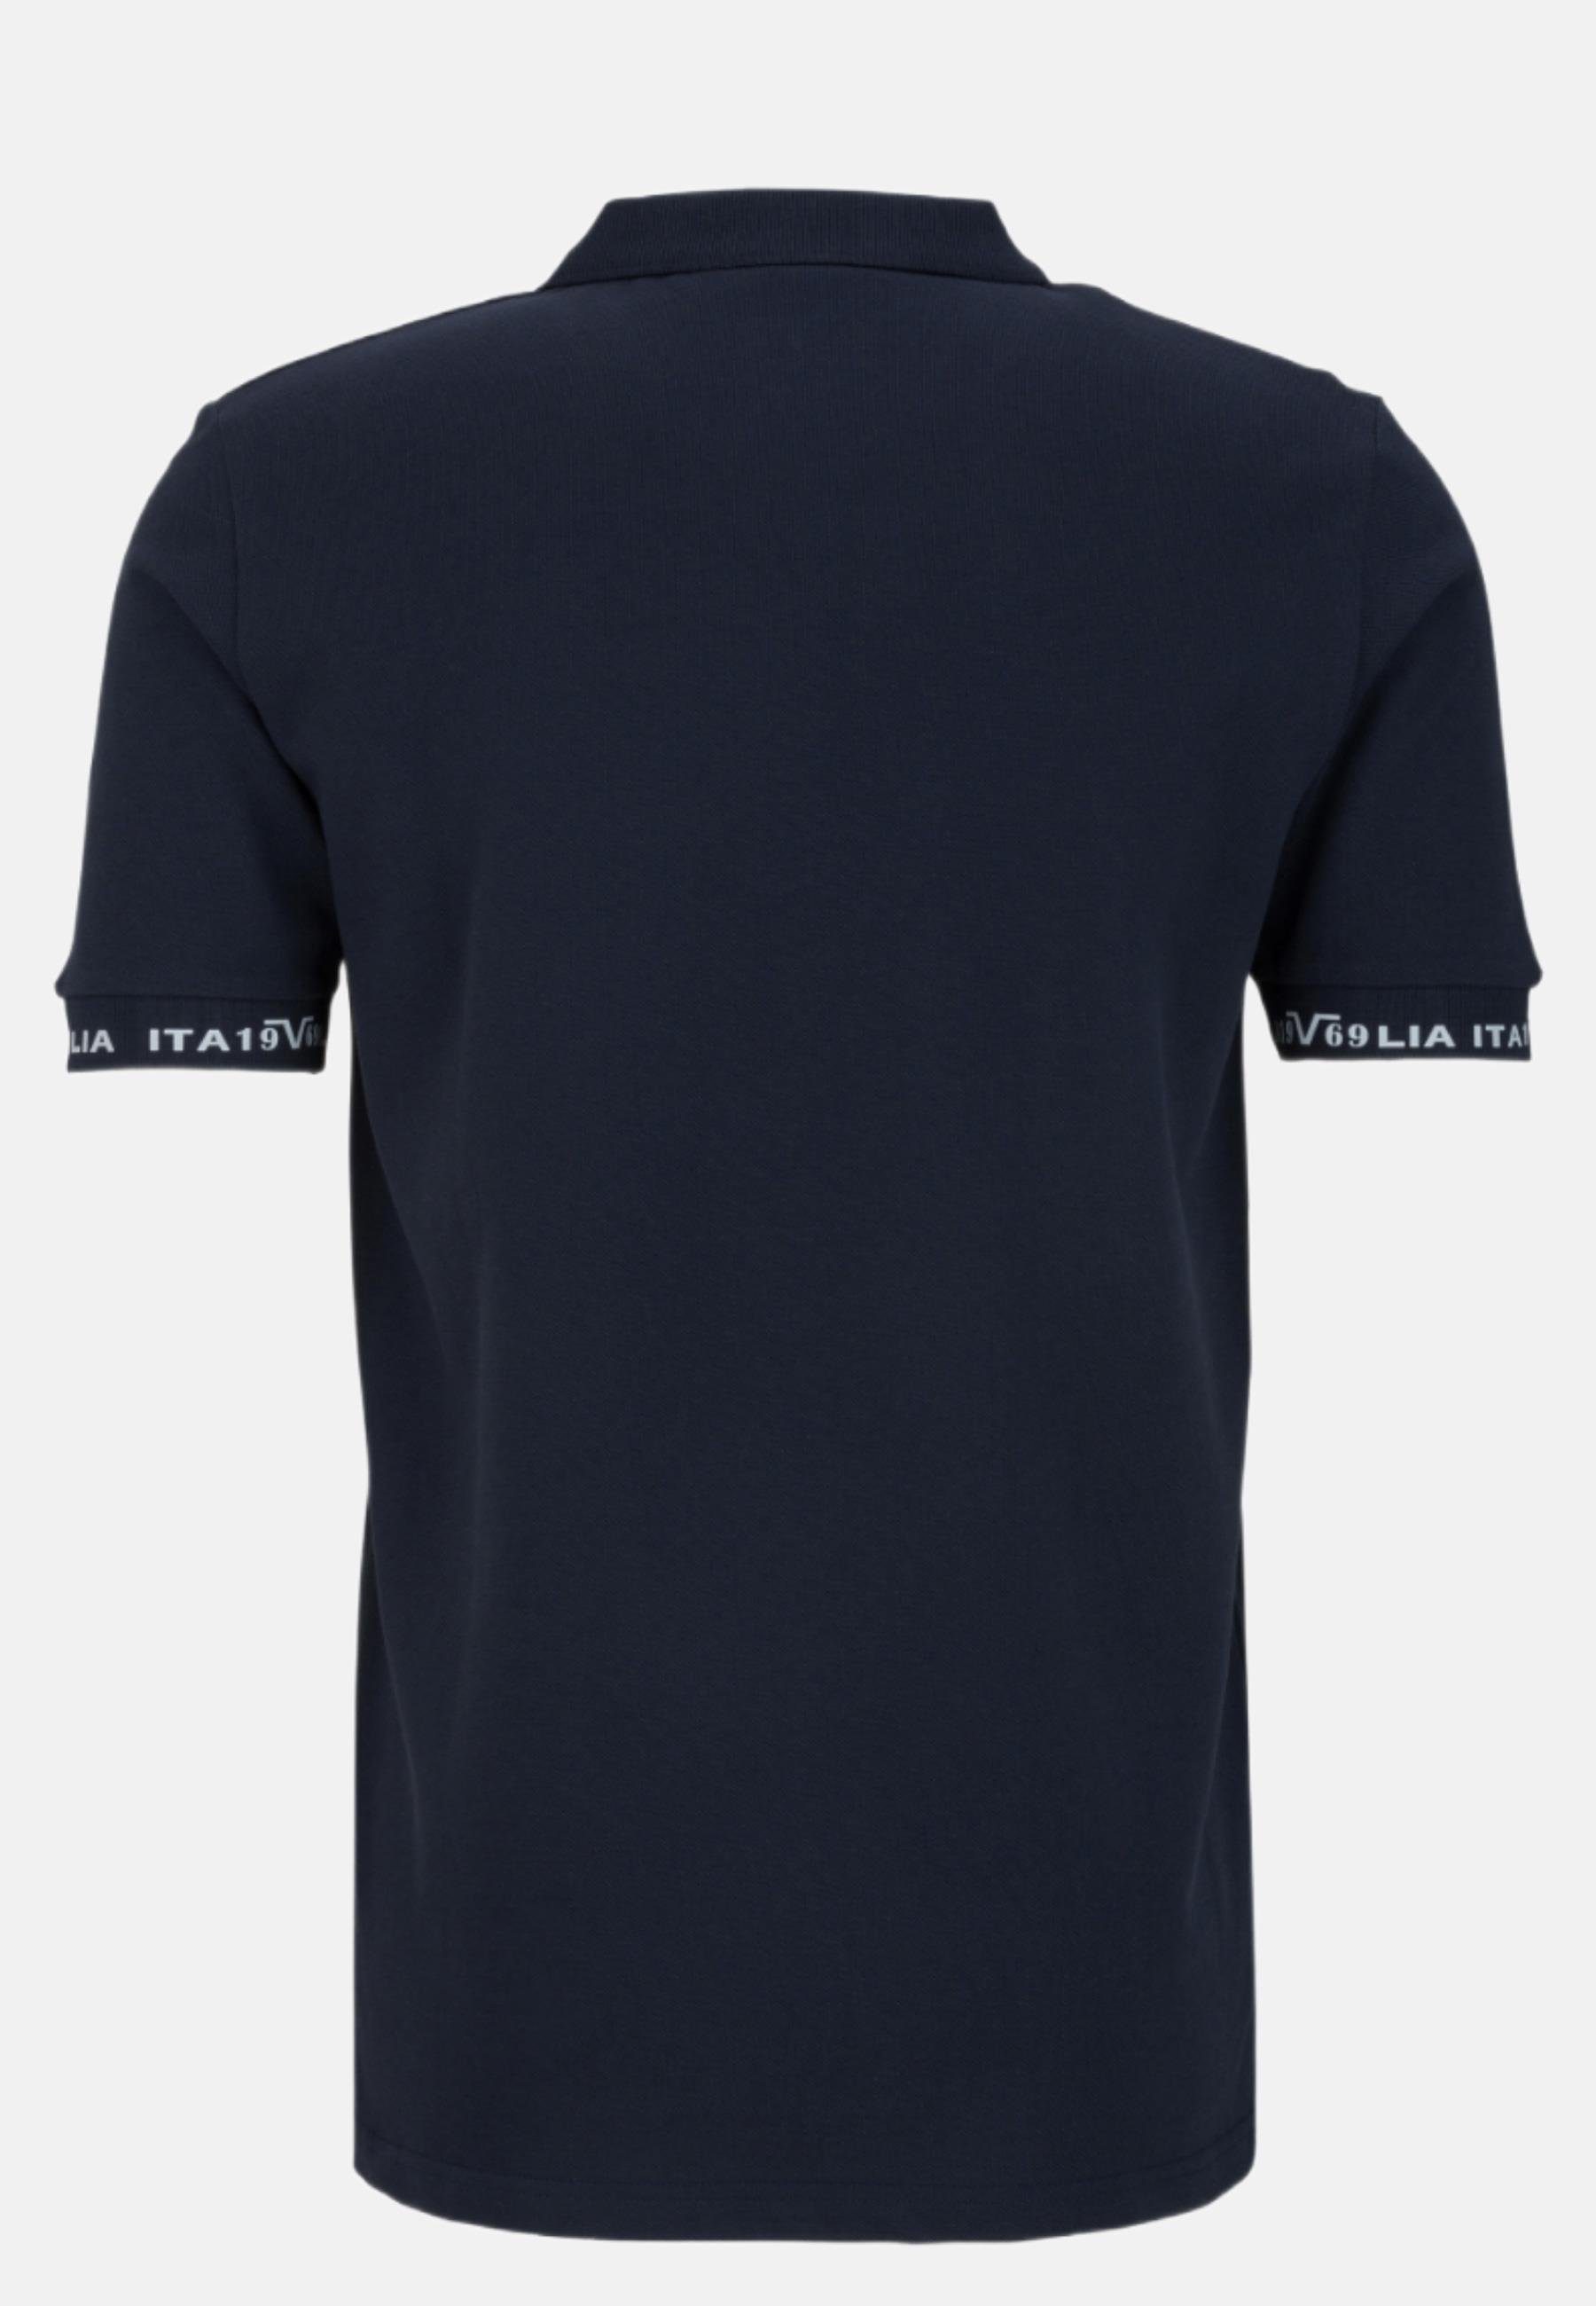 blau T-Shirt Polo Versace by Italia 19V69 Harry Shirt